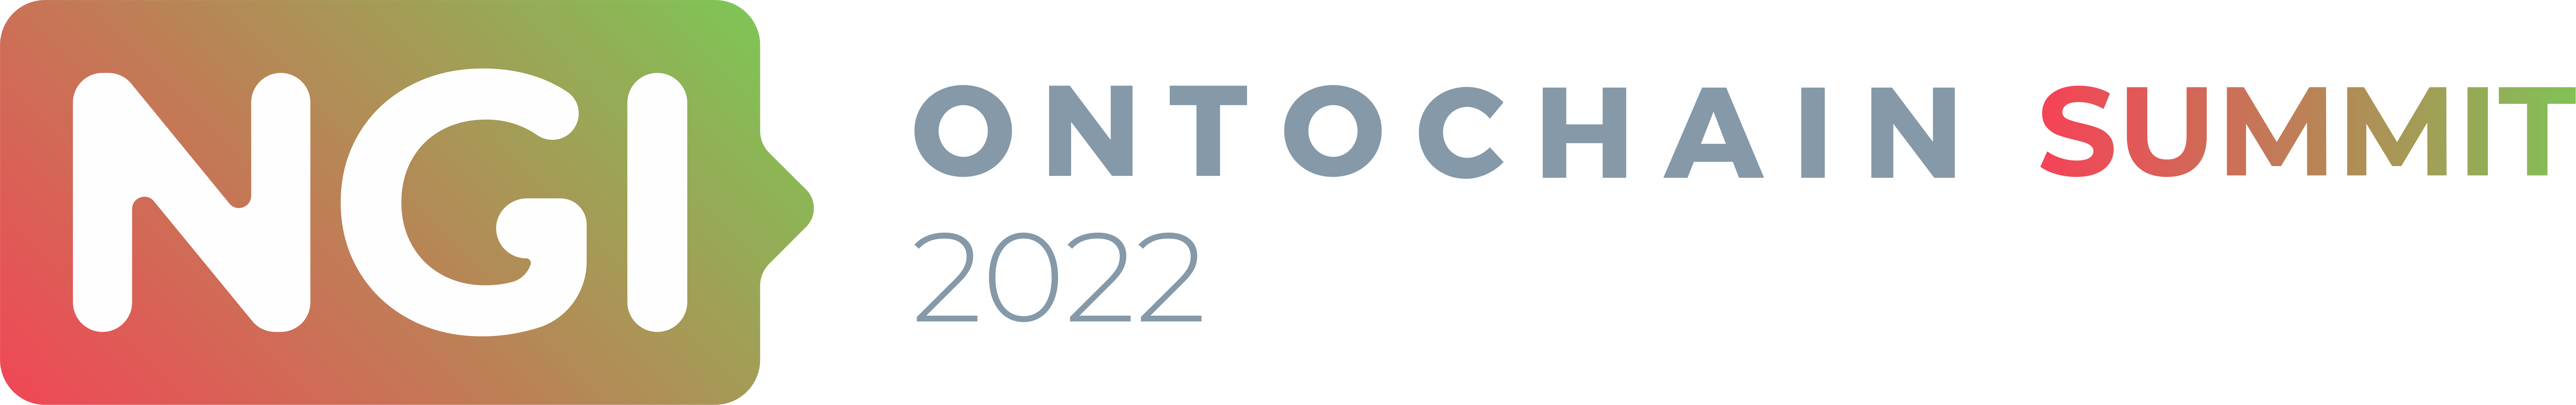 Ontochain Summit 2022 Logo